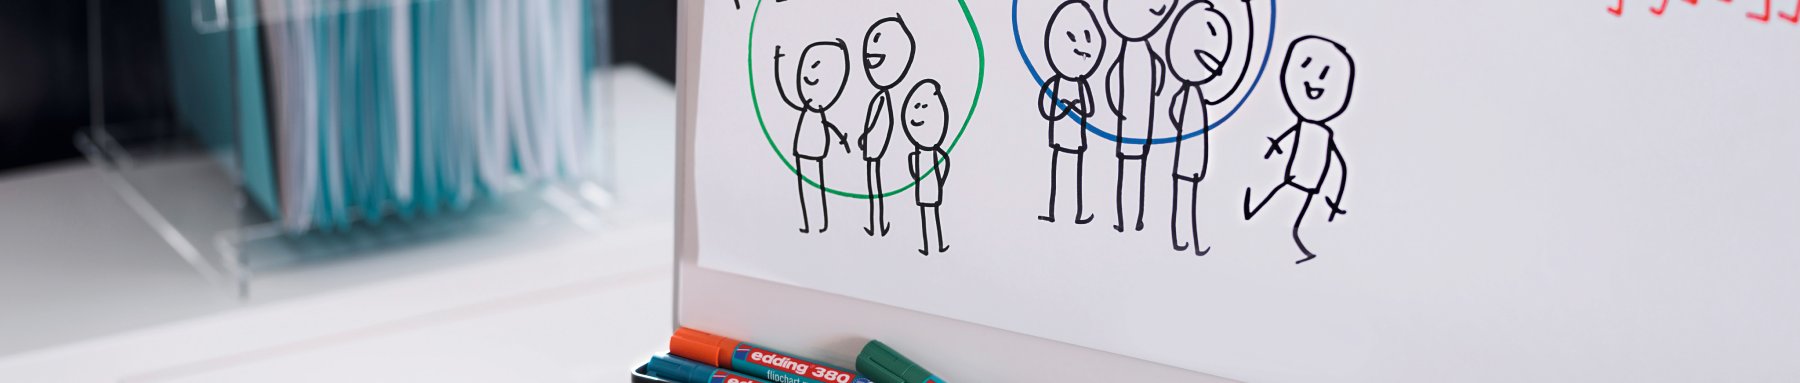 Eine Panoramaansicht eines Whiteboards mit einer handgezeichneten Skizze von Strichmännchen, die Teamarbeit oder Gruppendynamik hervorheben, und trocken abwischbaren Markern darunter.